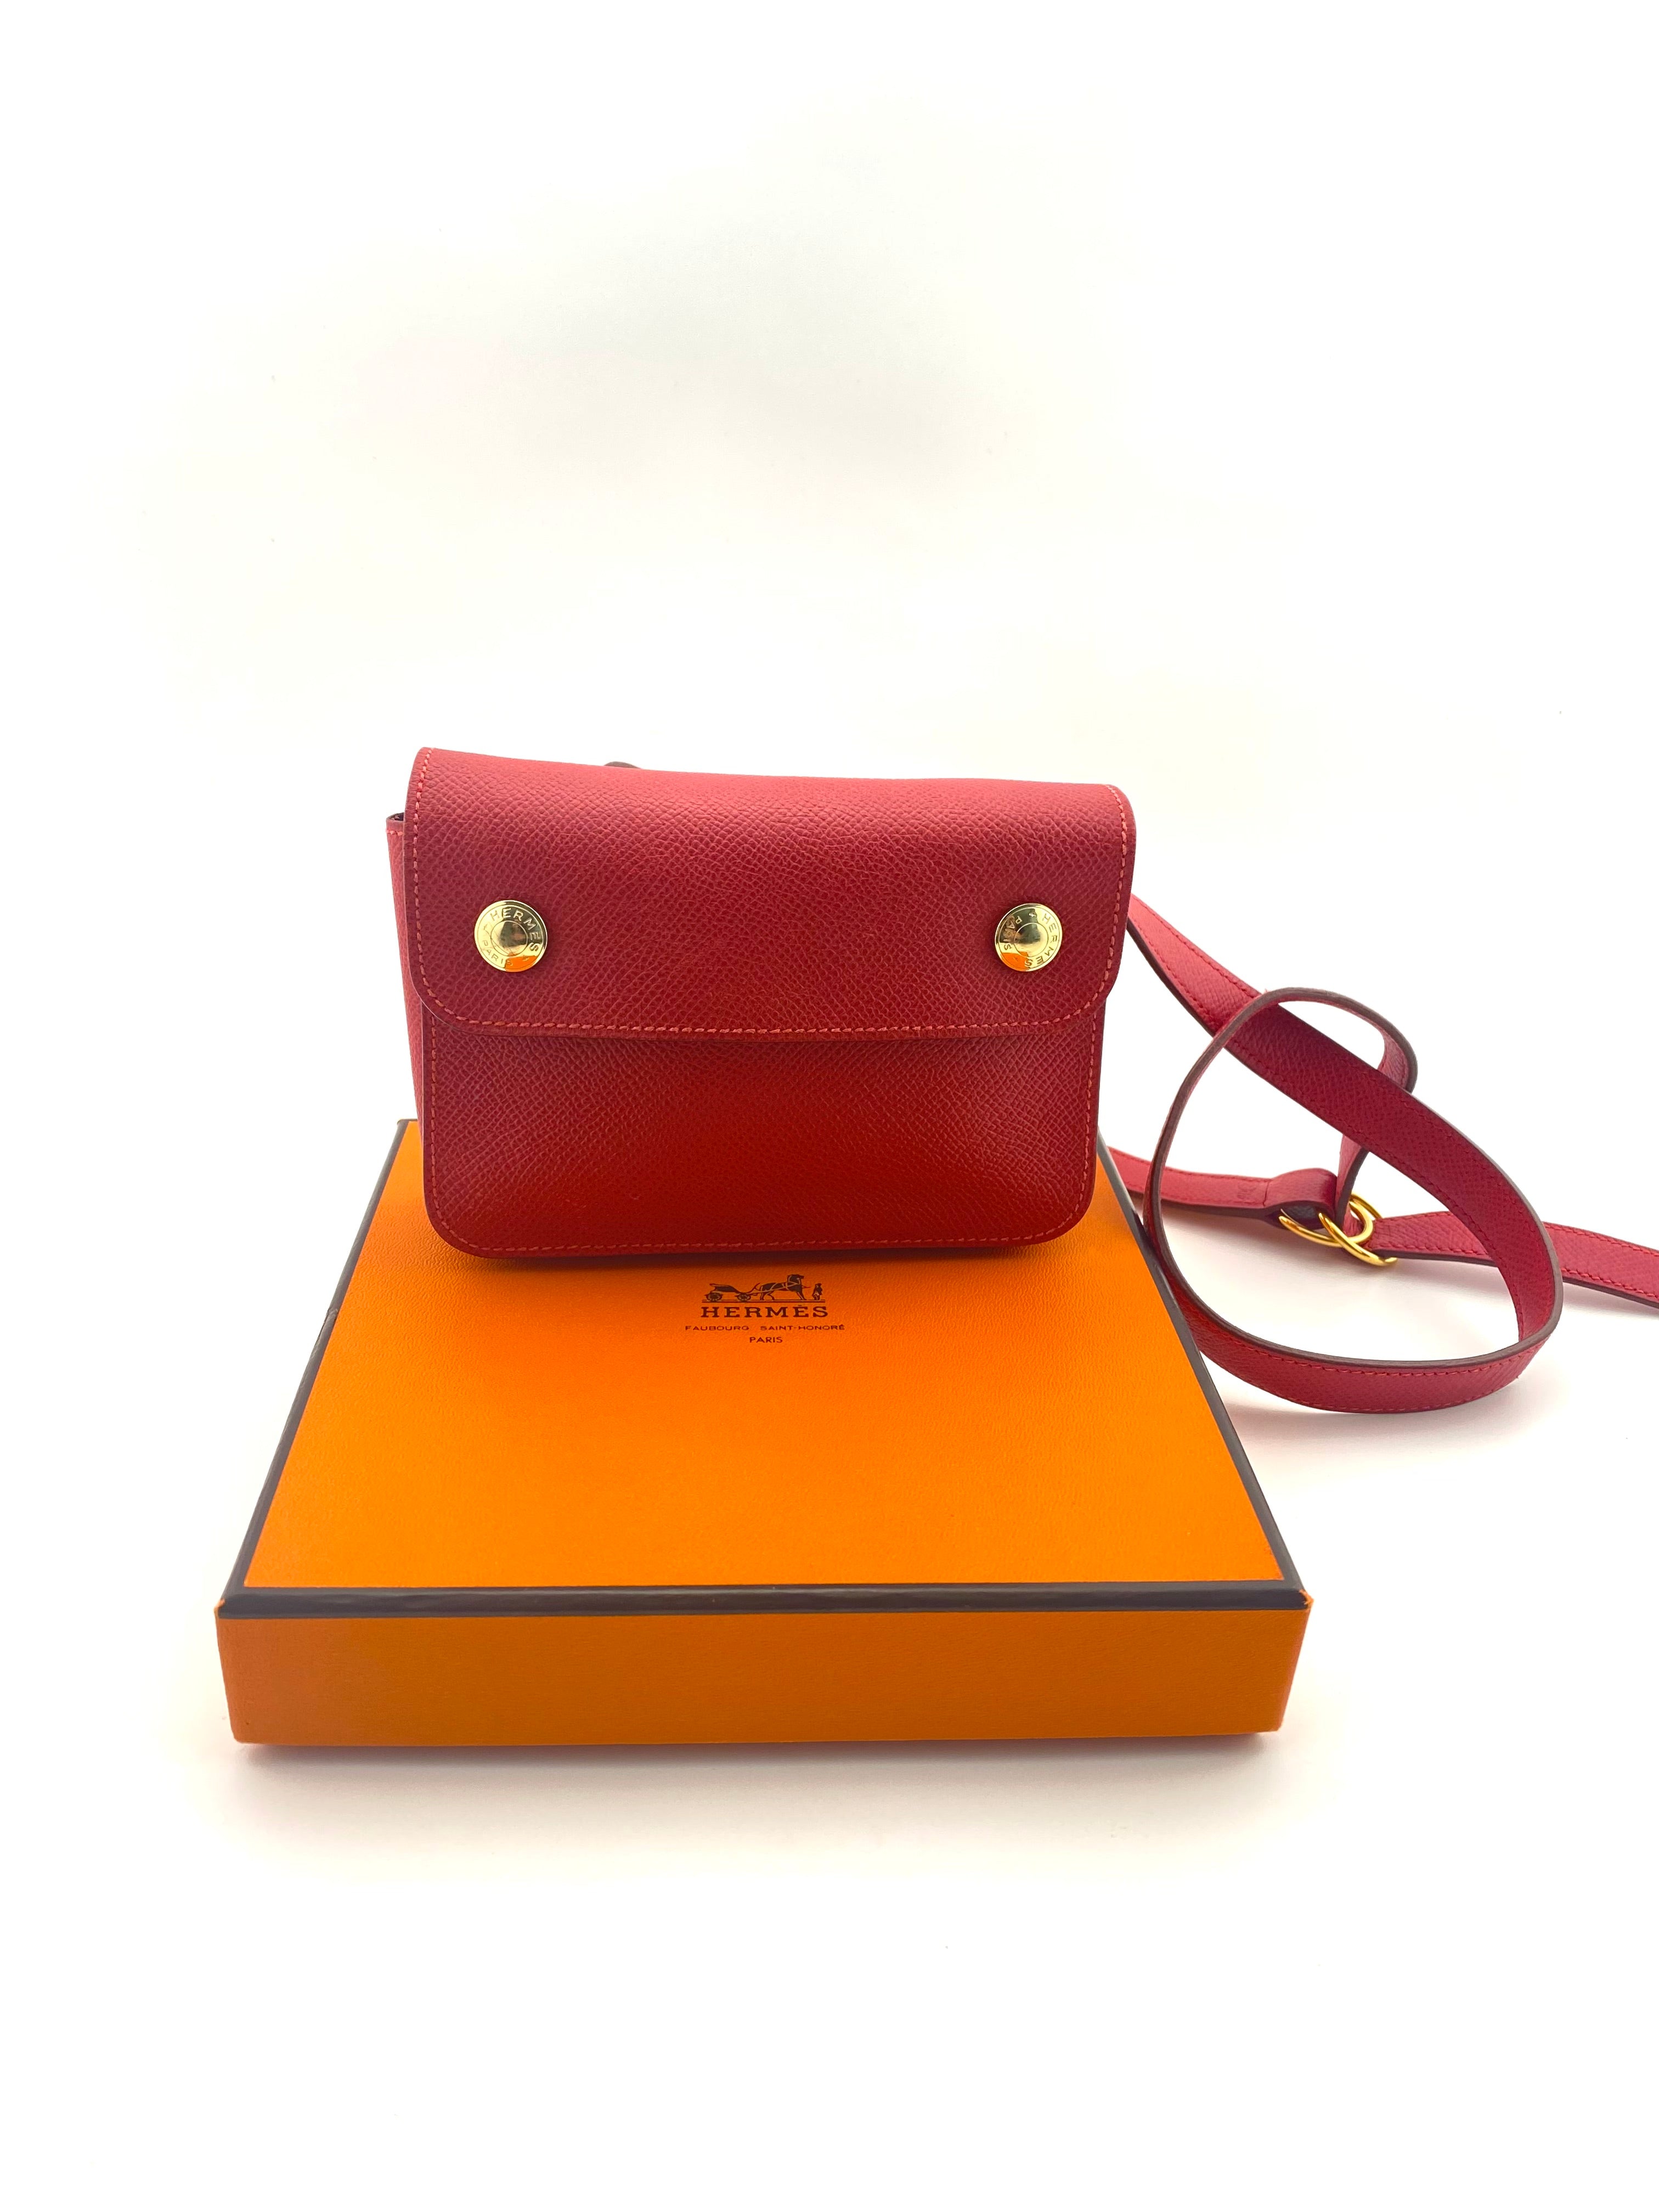 1990s Hermés Red Leather Belt Bag – Ladybug Vintage